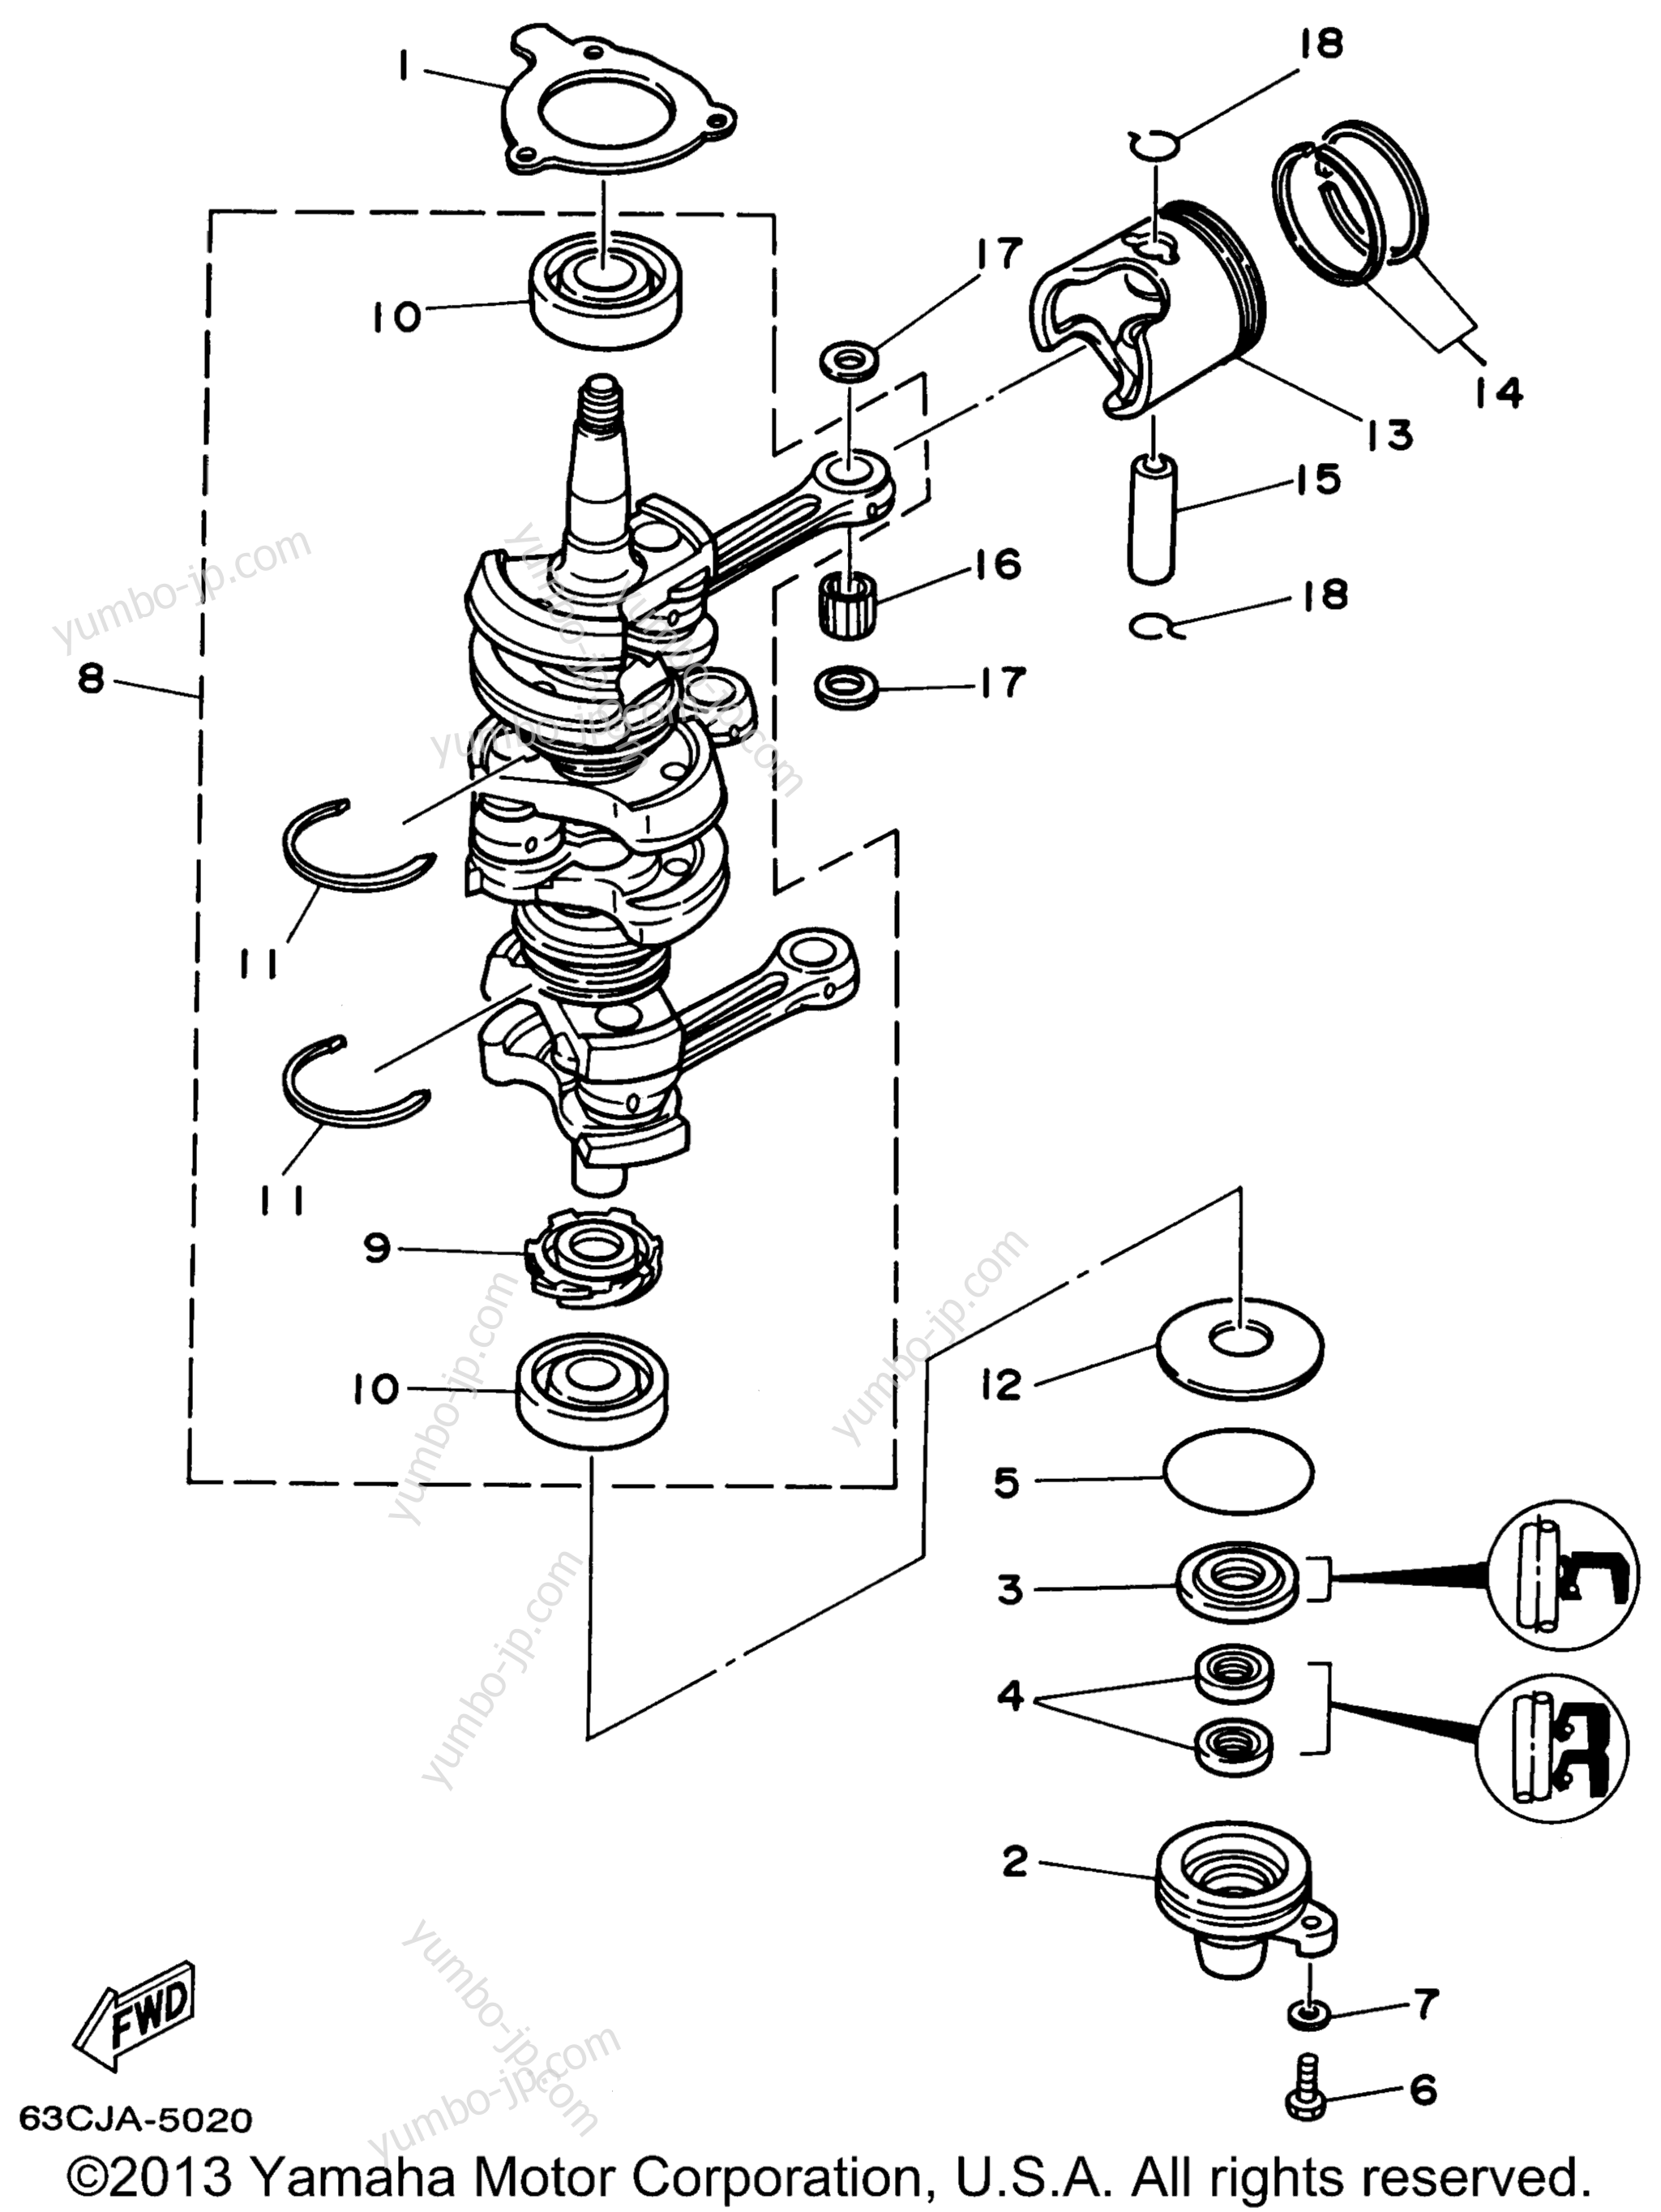 Коленвал и поршневая группа для лодочных моторов YAMAHA P40EJRW_THLW (40ESRW) 1998 г.